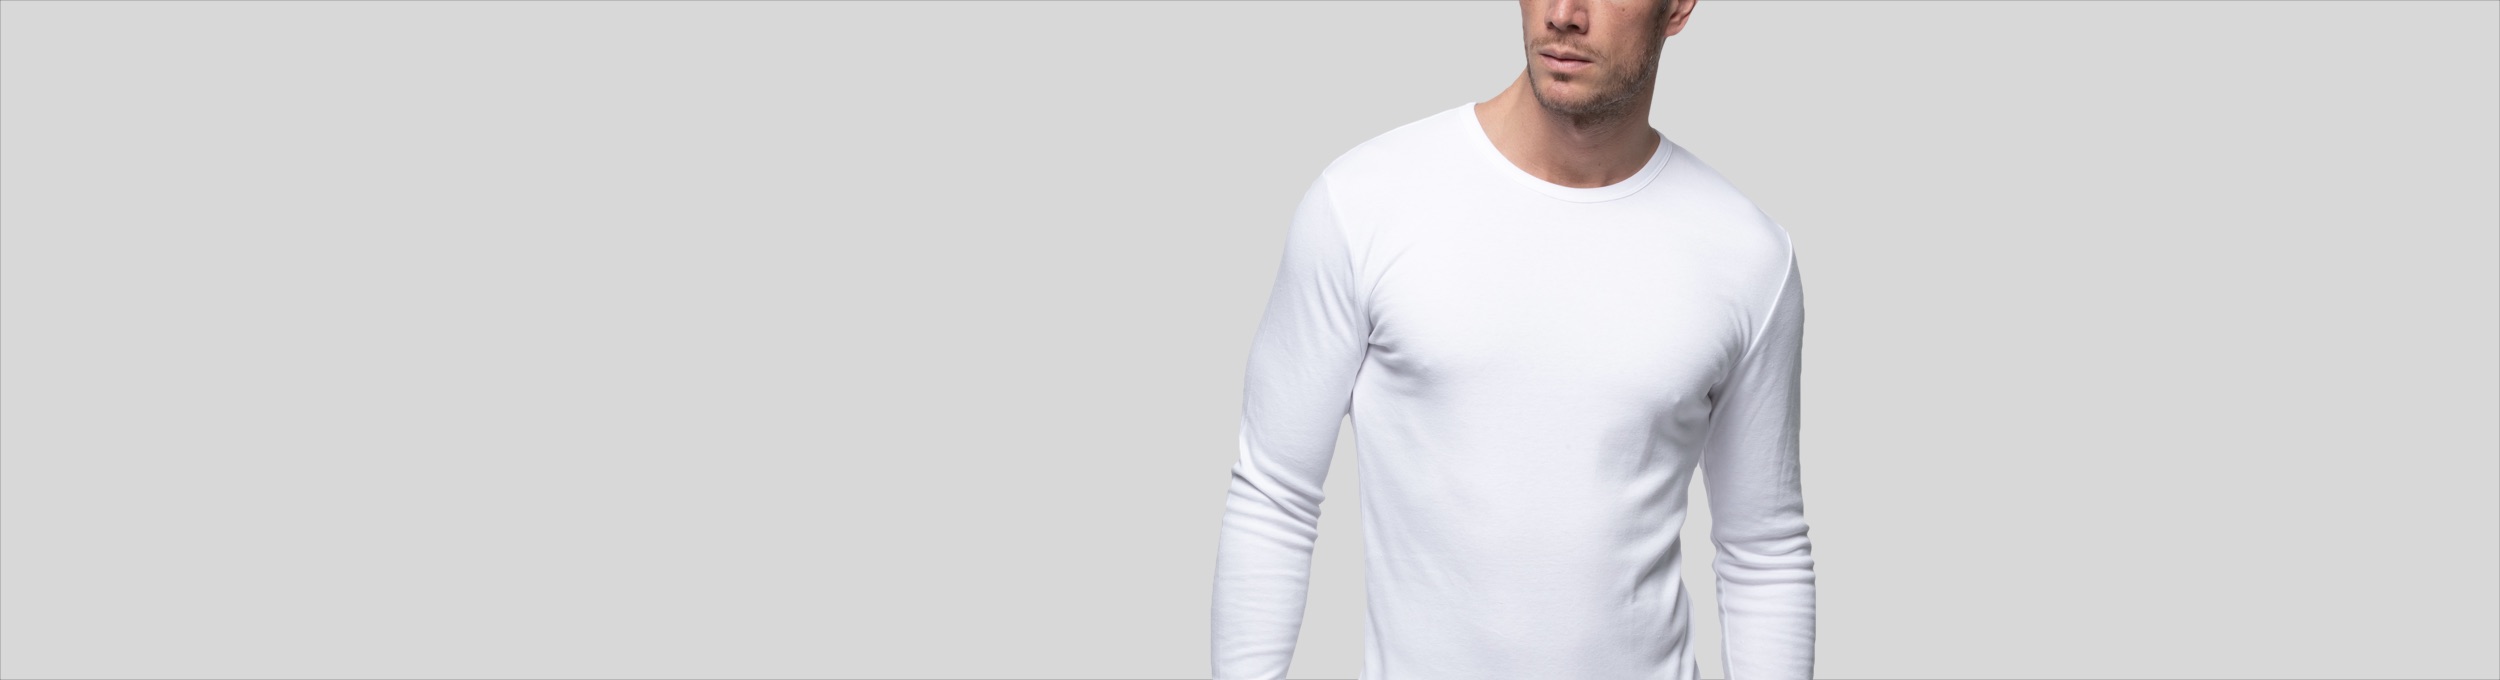 Camiseta interior m/c hombre algodón 100%, AS00306, Abanderado